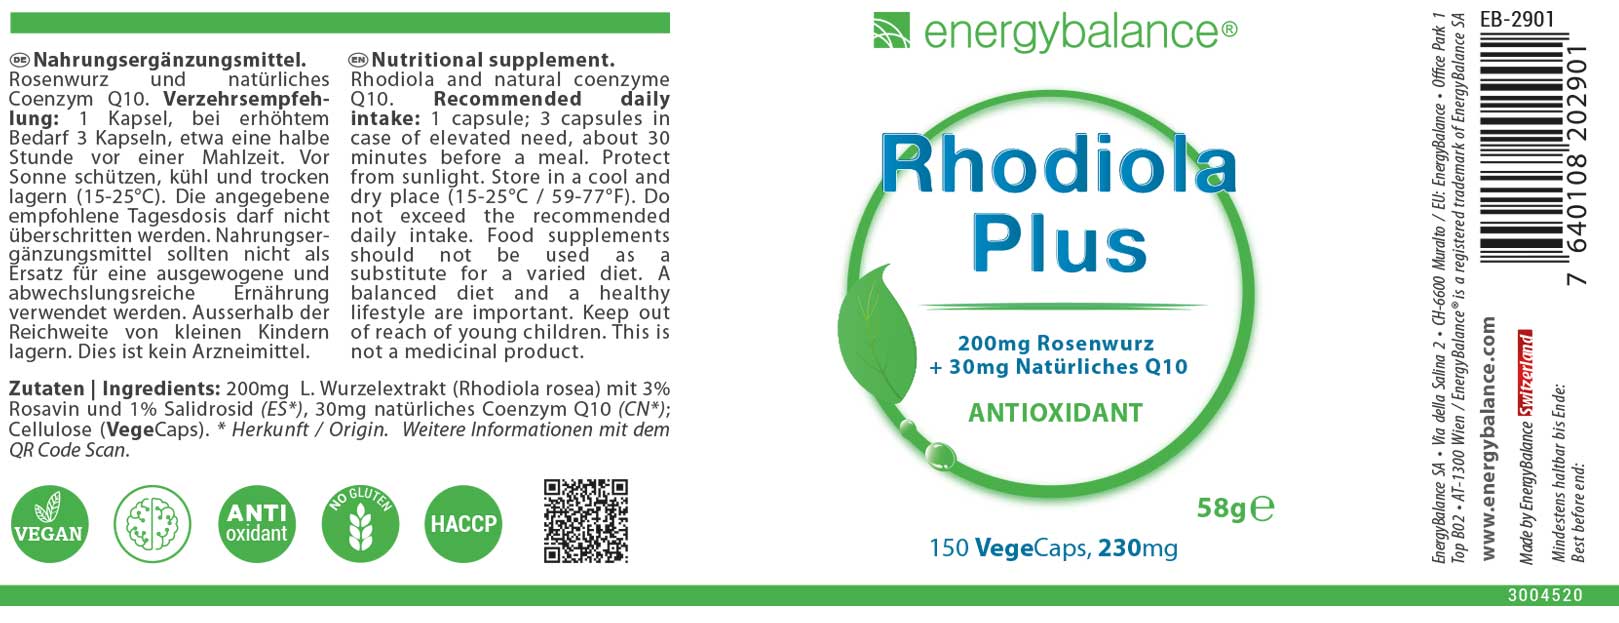 Rhodiola Plus Etikett von Energybalance